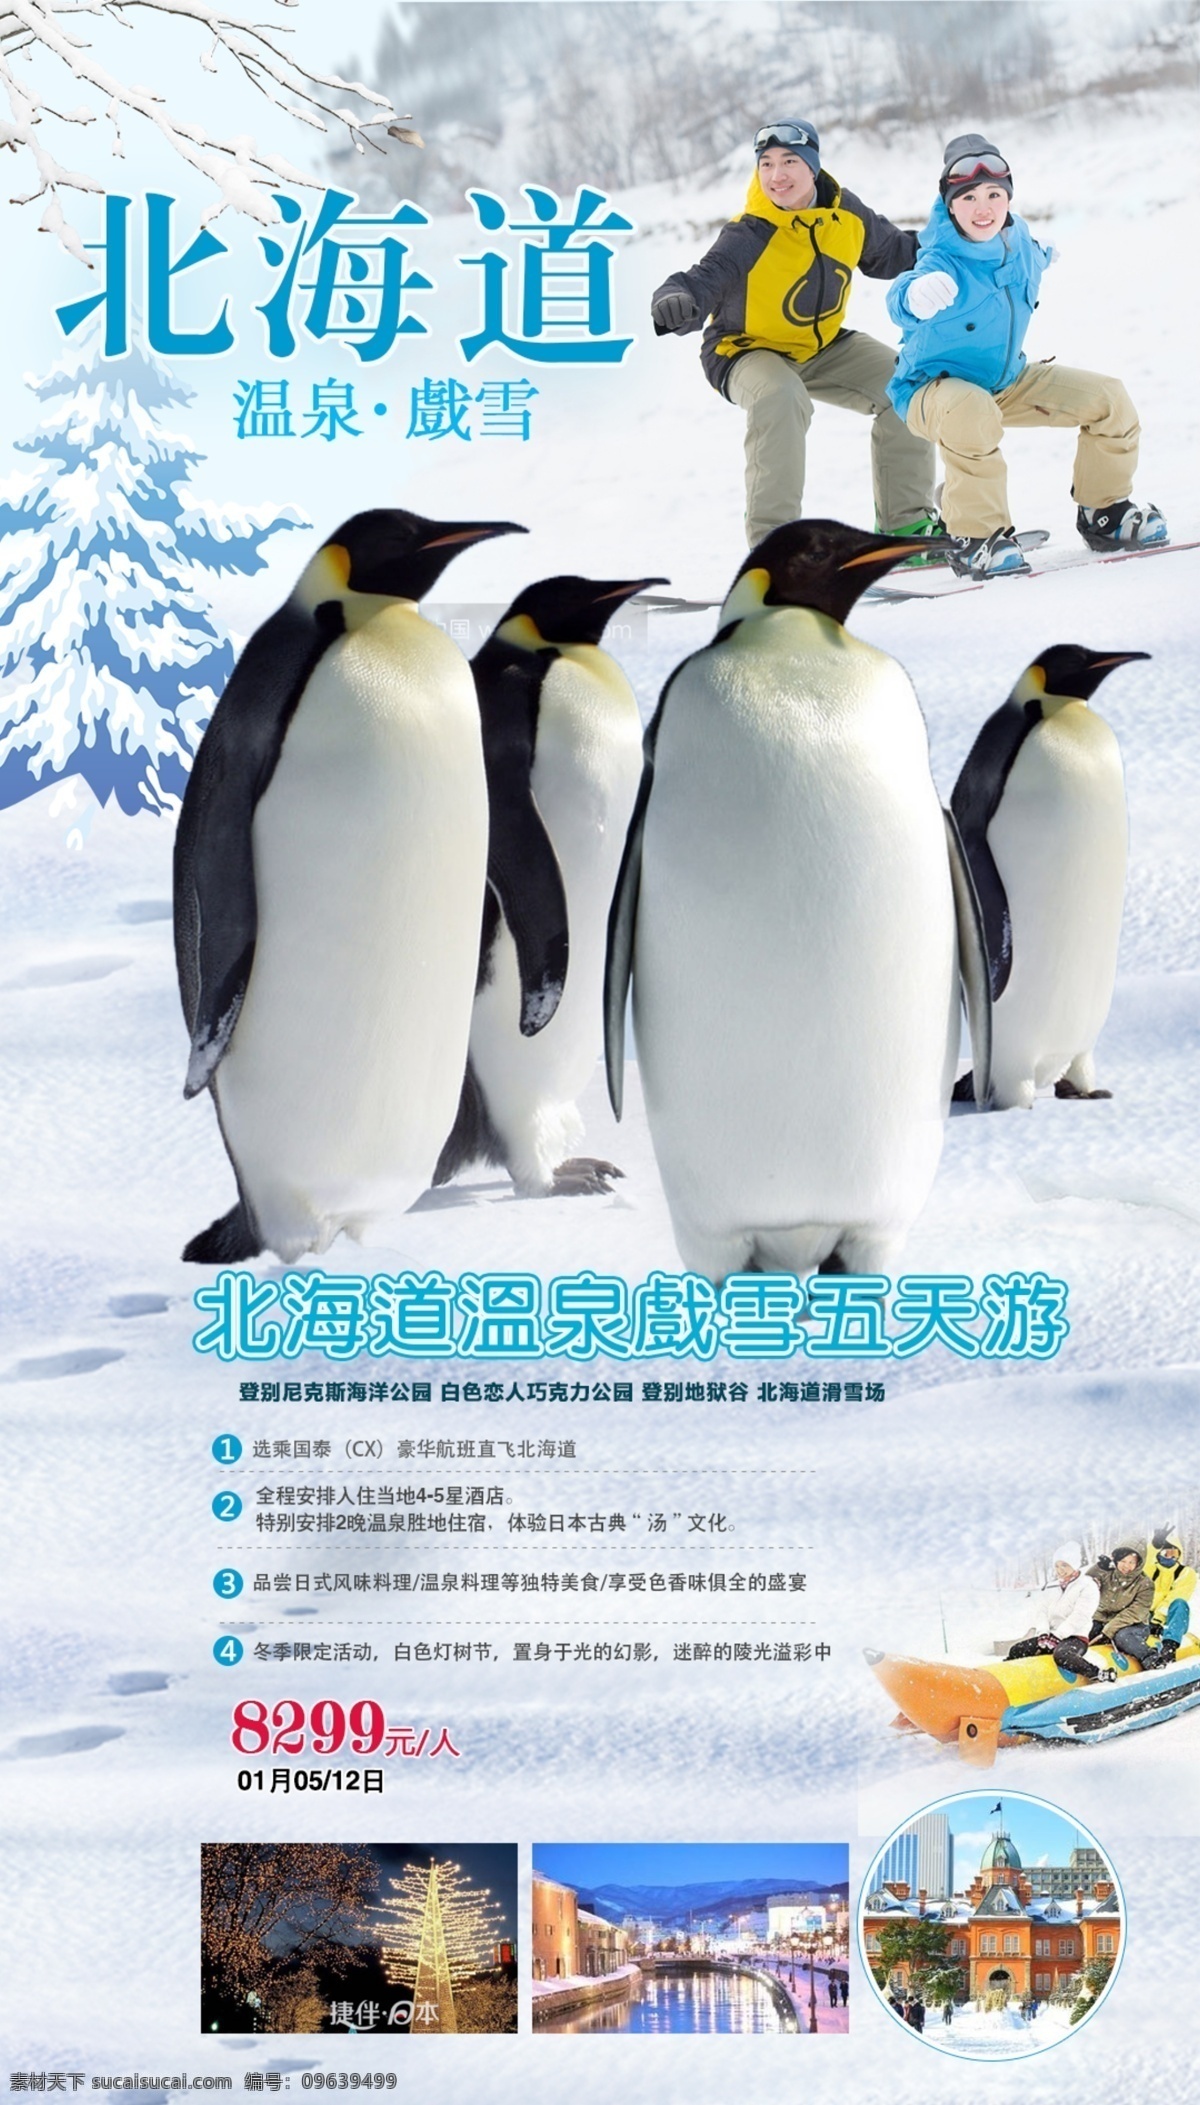 北海道冬季 北海道旅游 北海道企鹅 北海道滑雪 浪漫北海道 微信海报